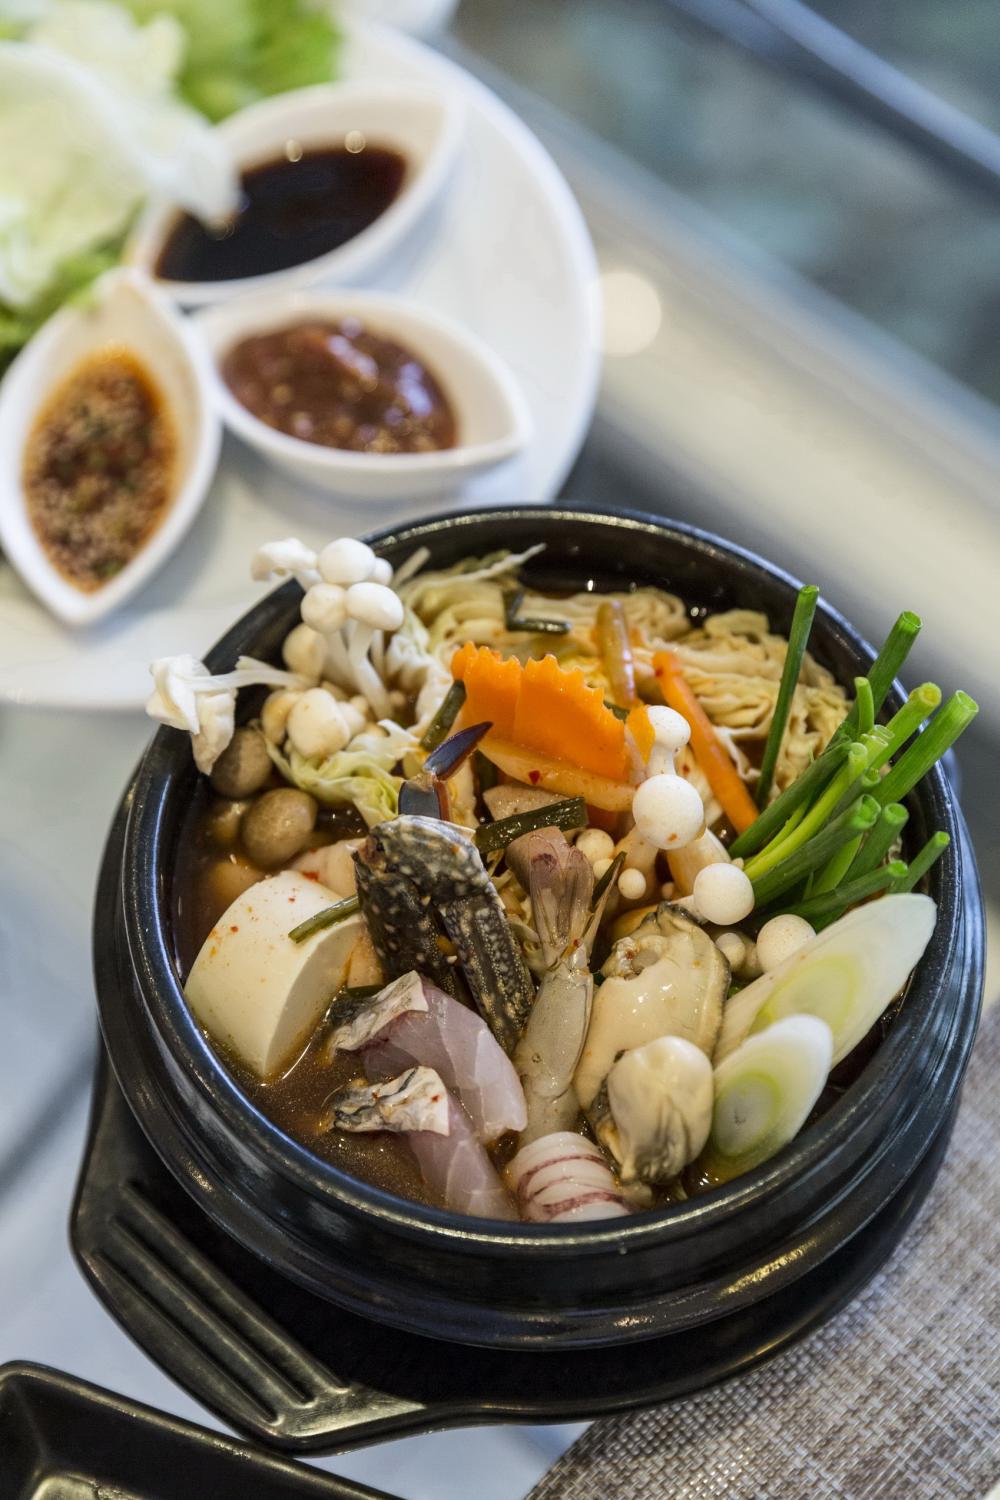 รูปภาพของ เทศกาลอาหารเกาหลี ที่แคนทารี เบย์, ศรีราชา